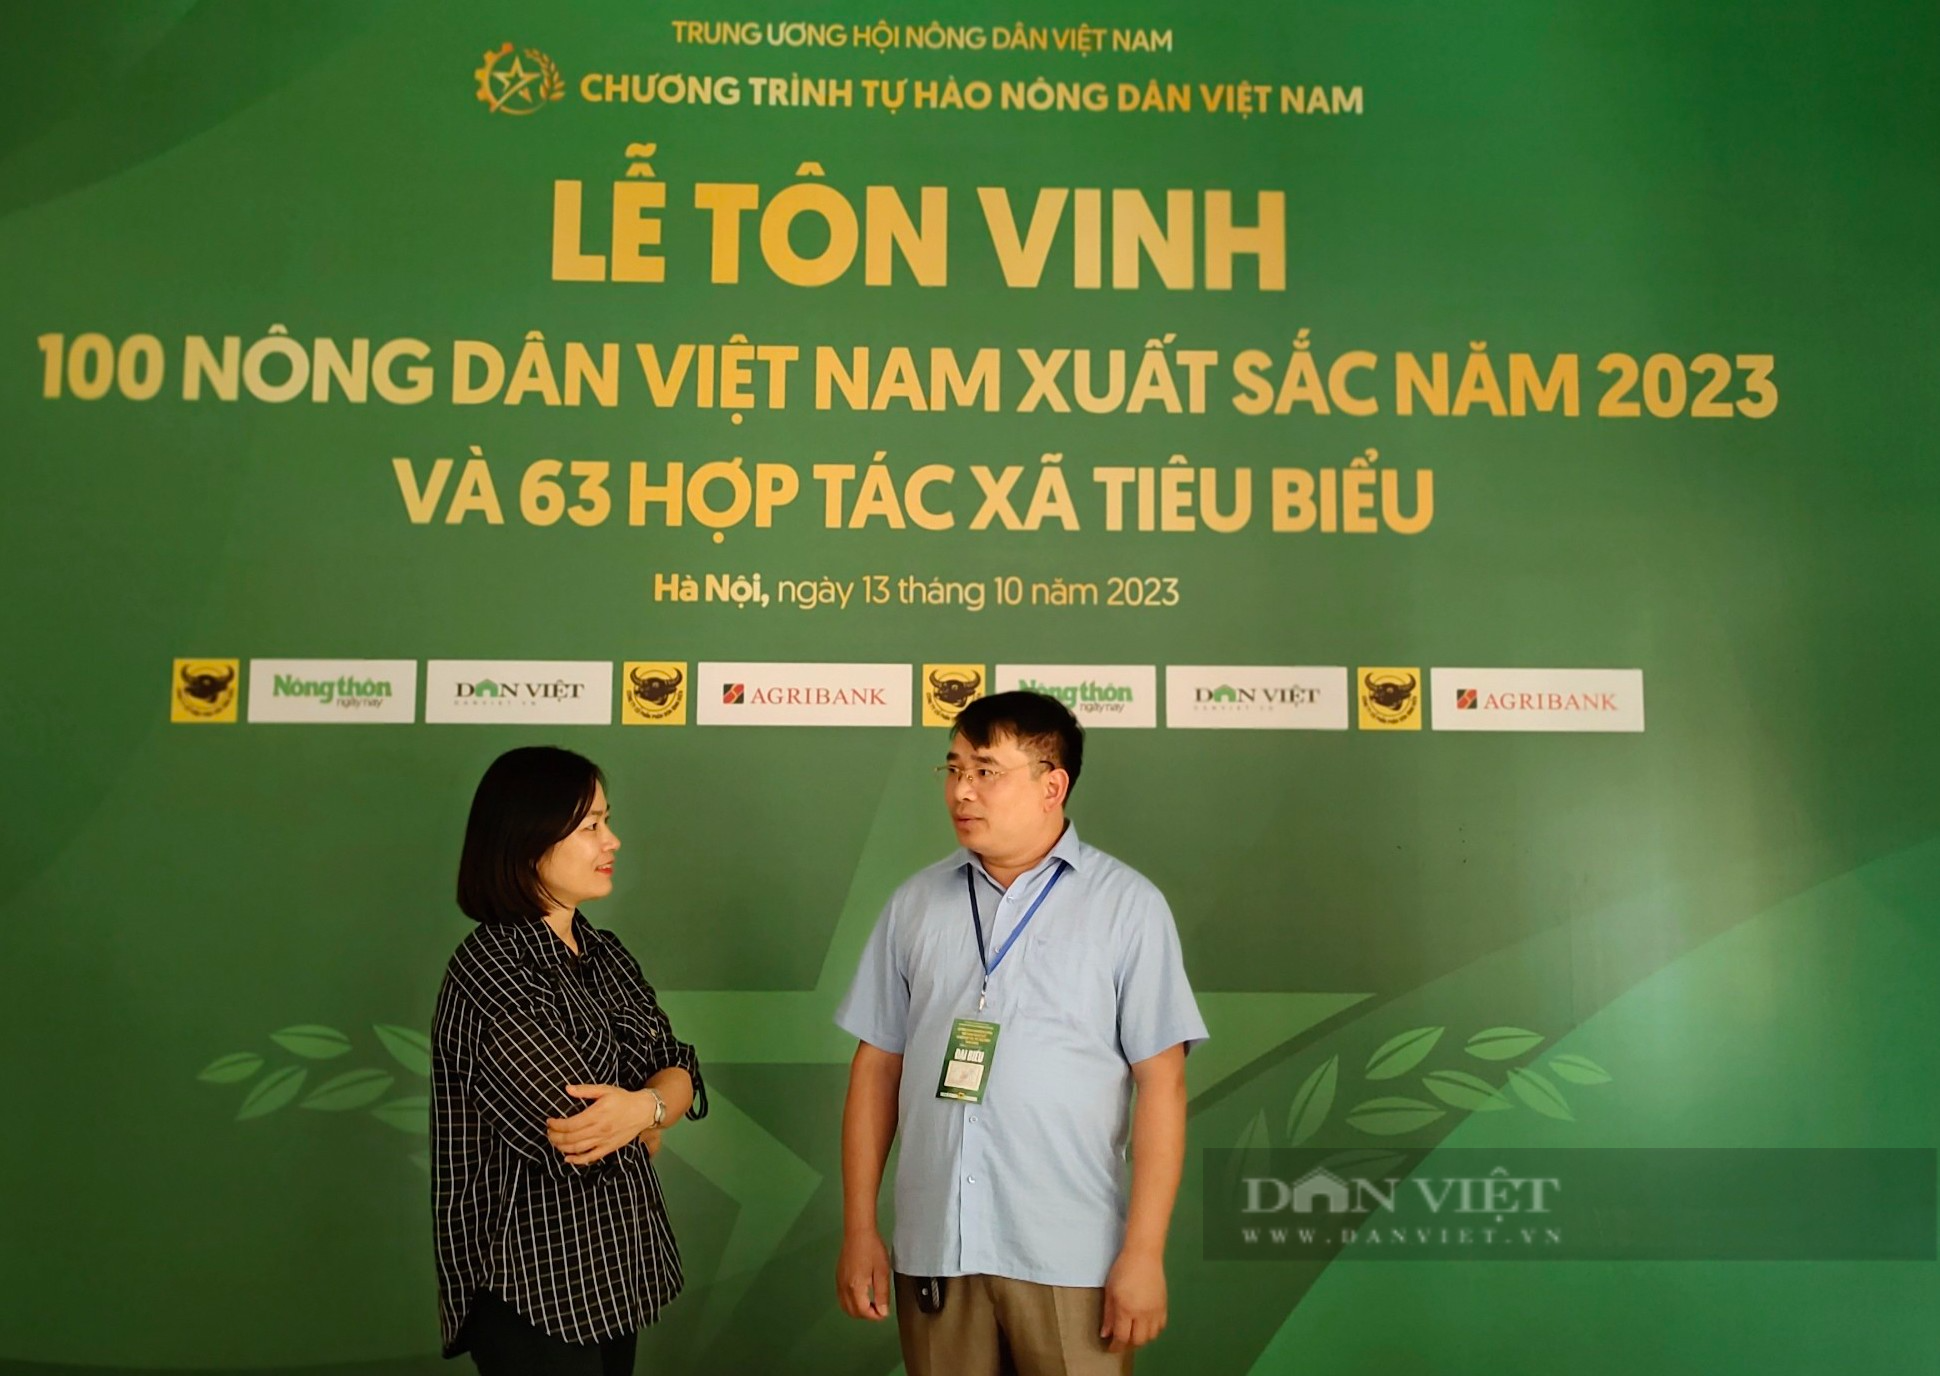 Nông dân Việt Nam xuất sắc 2023: Quyết tâm đi &quot;du học&quot; để chủ động sản xuất giống cá nước lạnh - Ảnh 4.